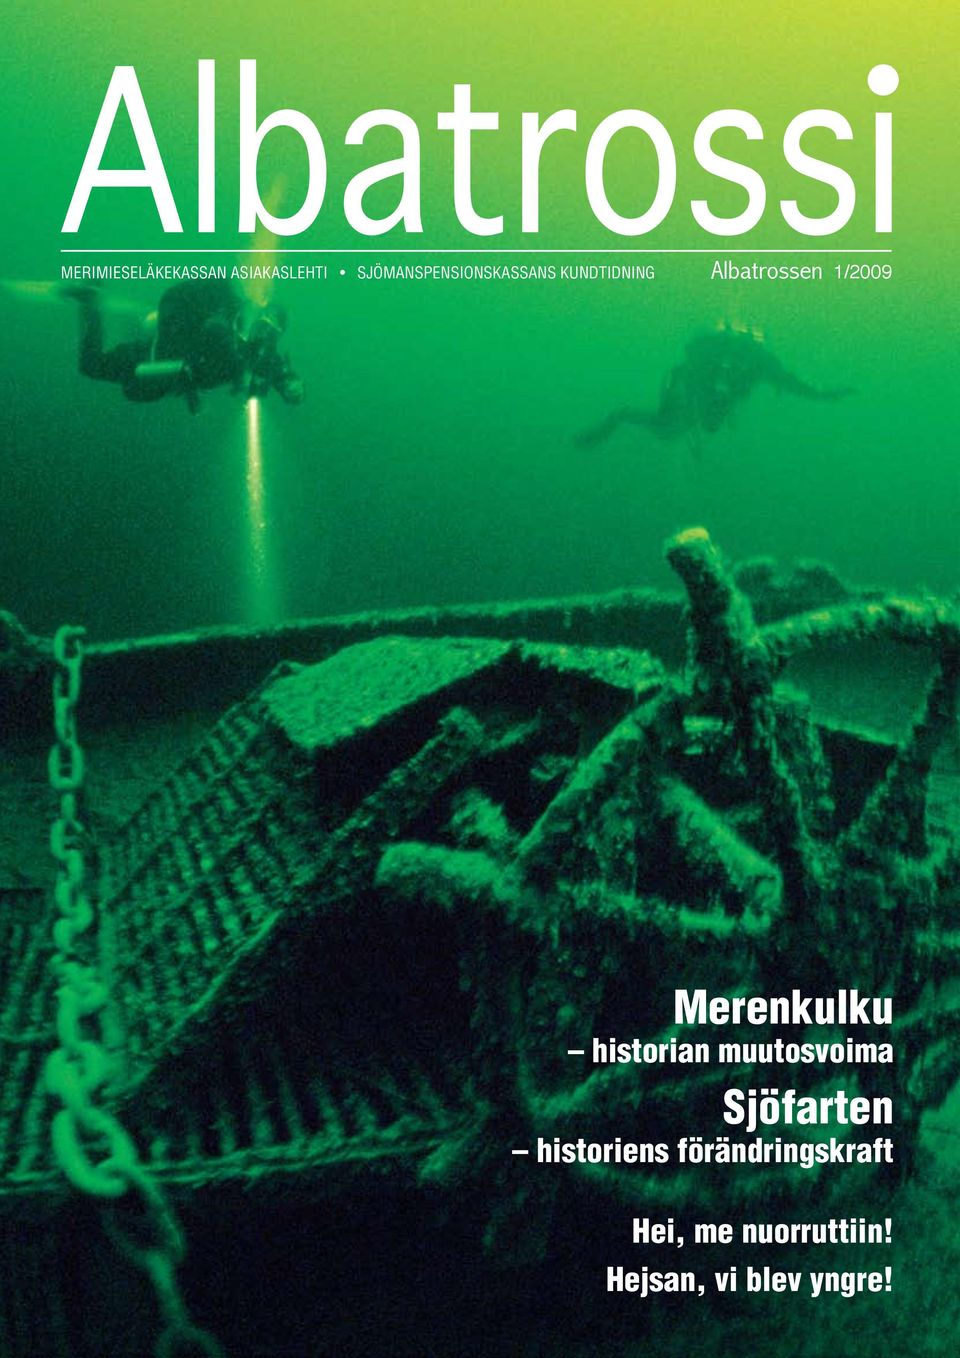 1/2009 Merenkulku historian muutosvoima Sjöfarten